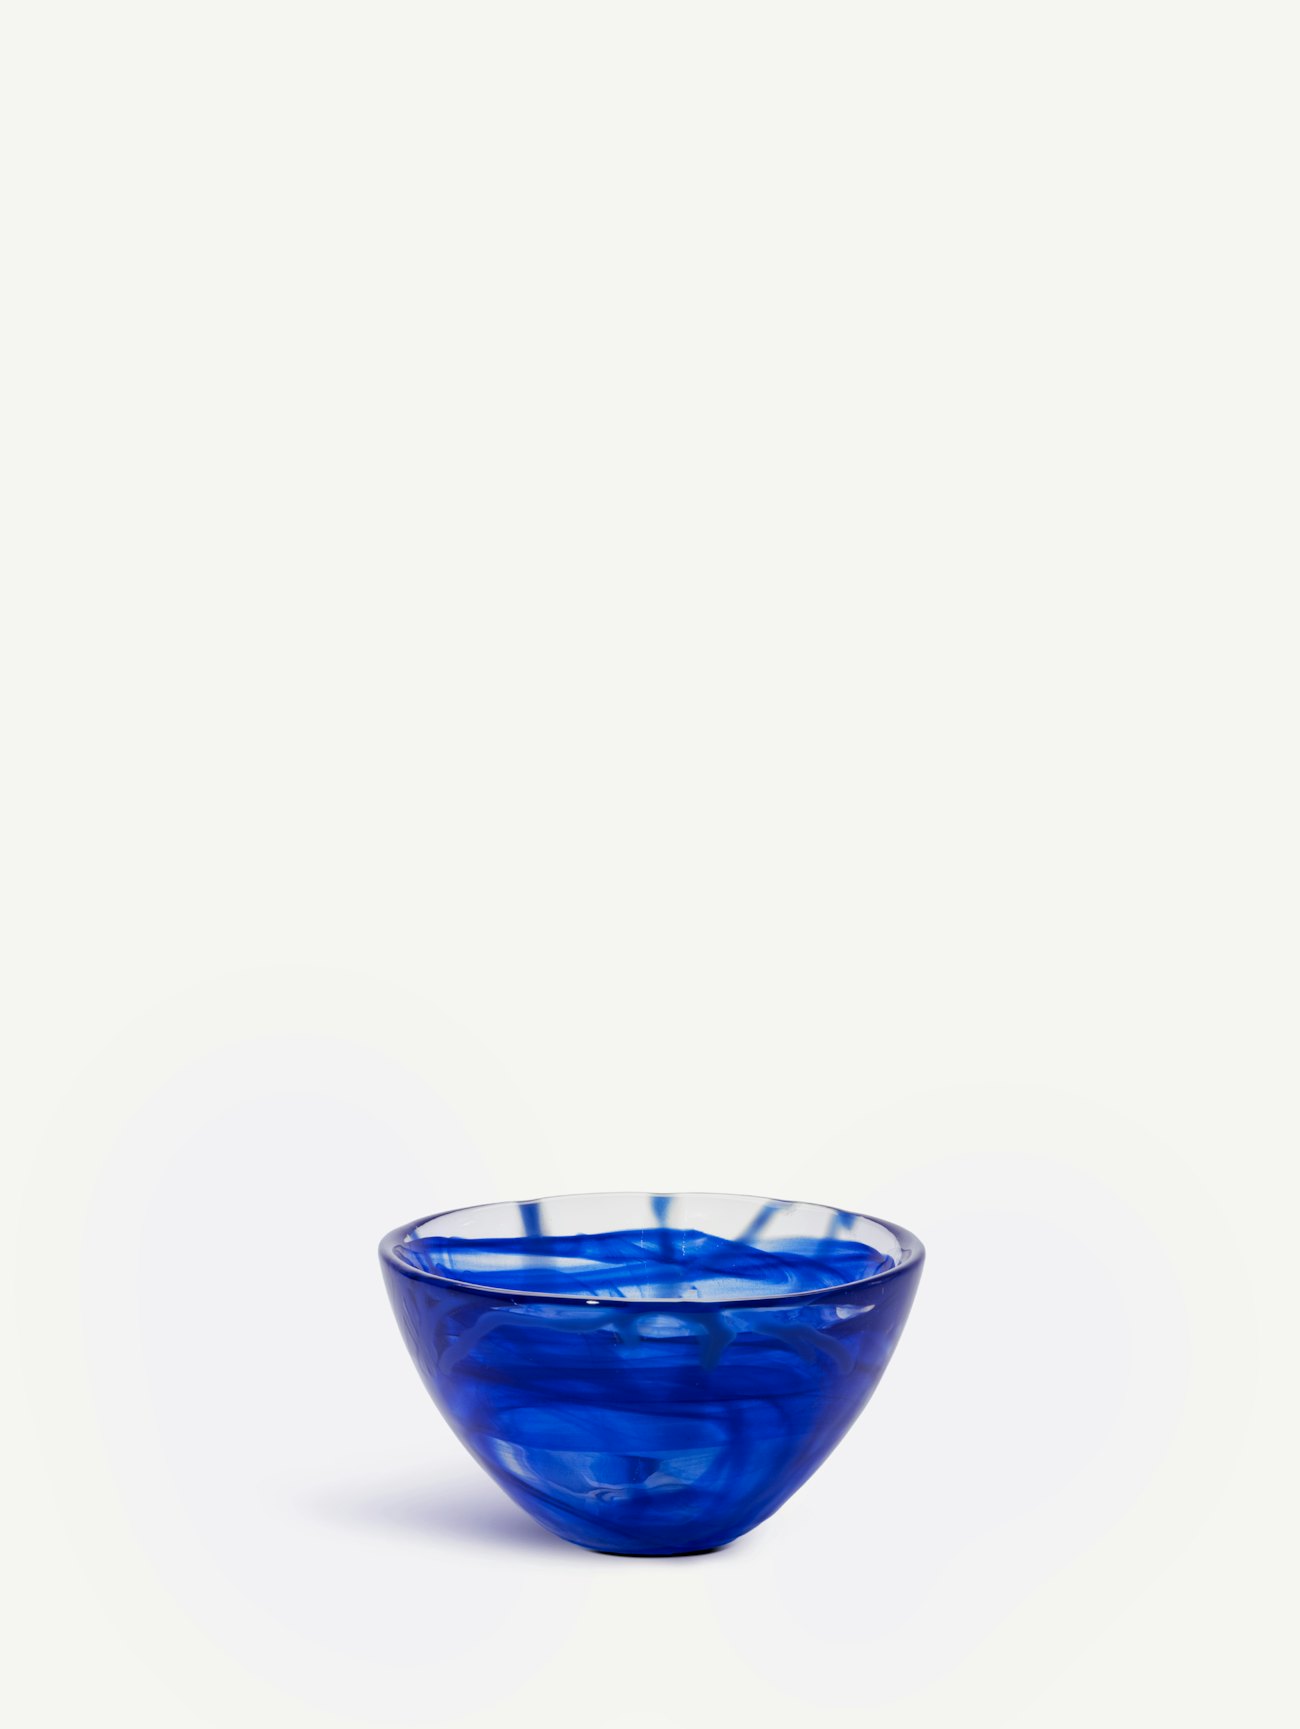 Contrast bowl blue/blue 160mm